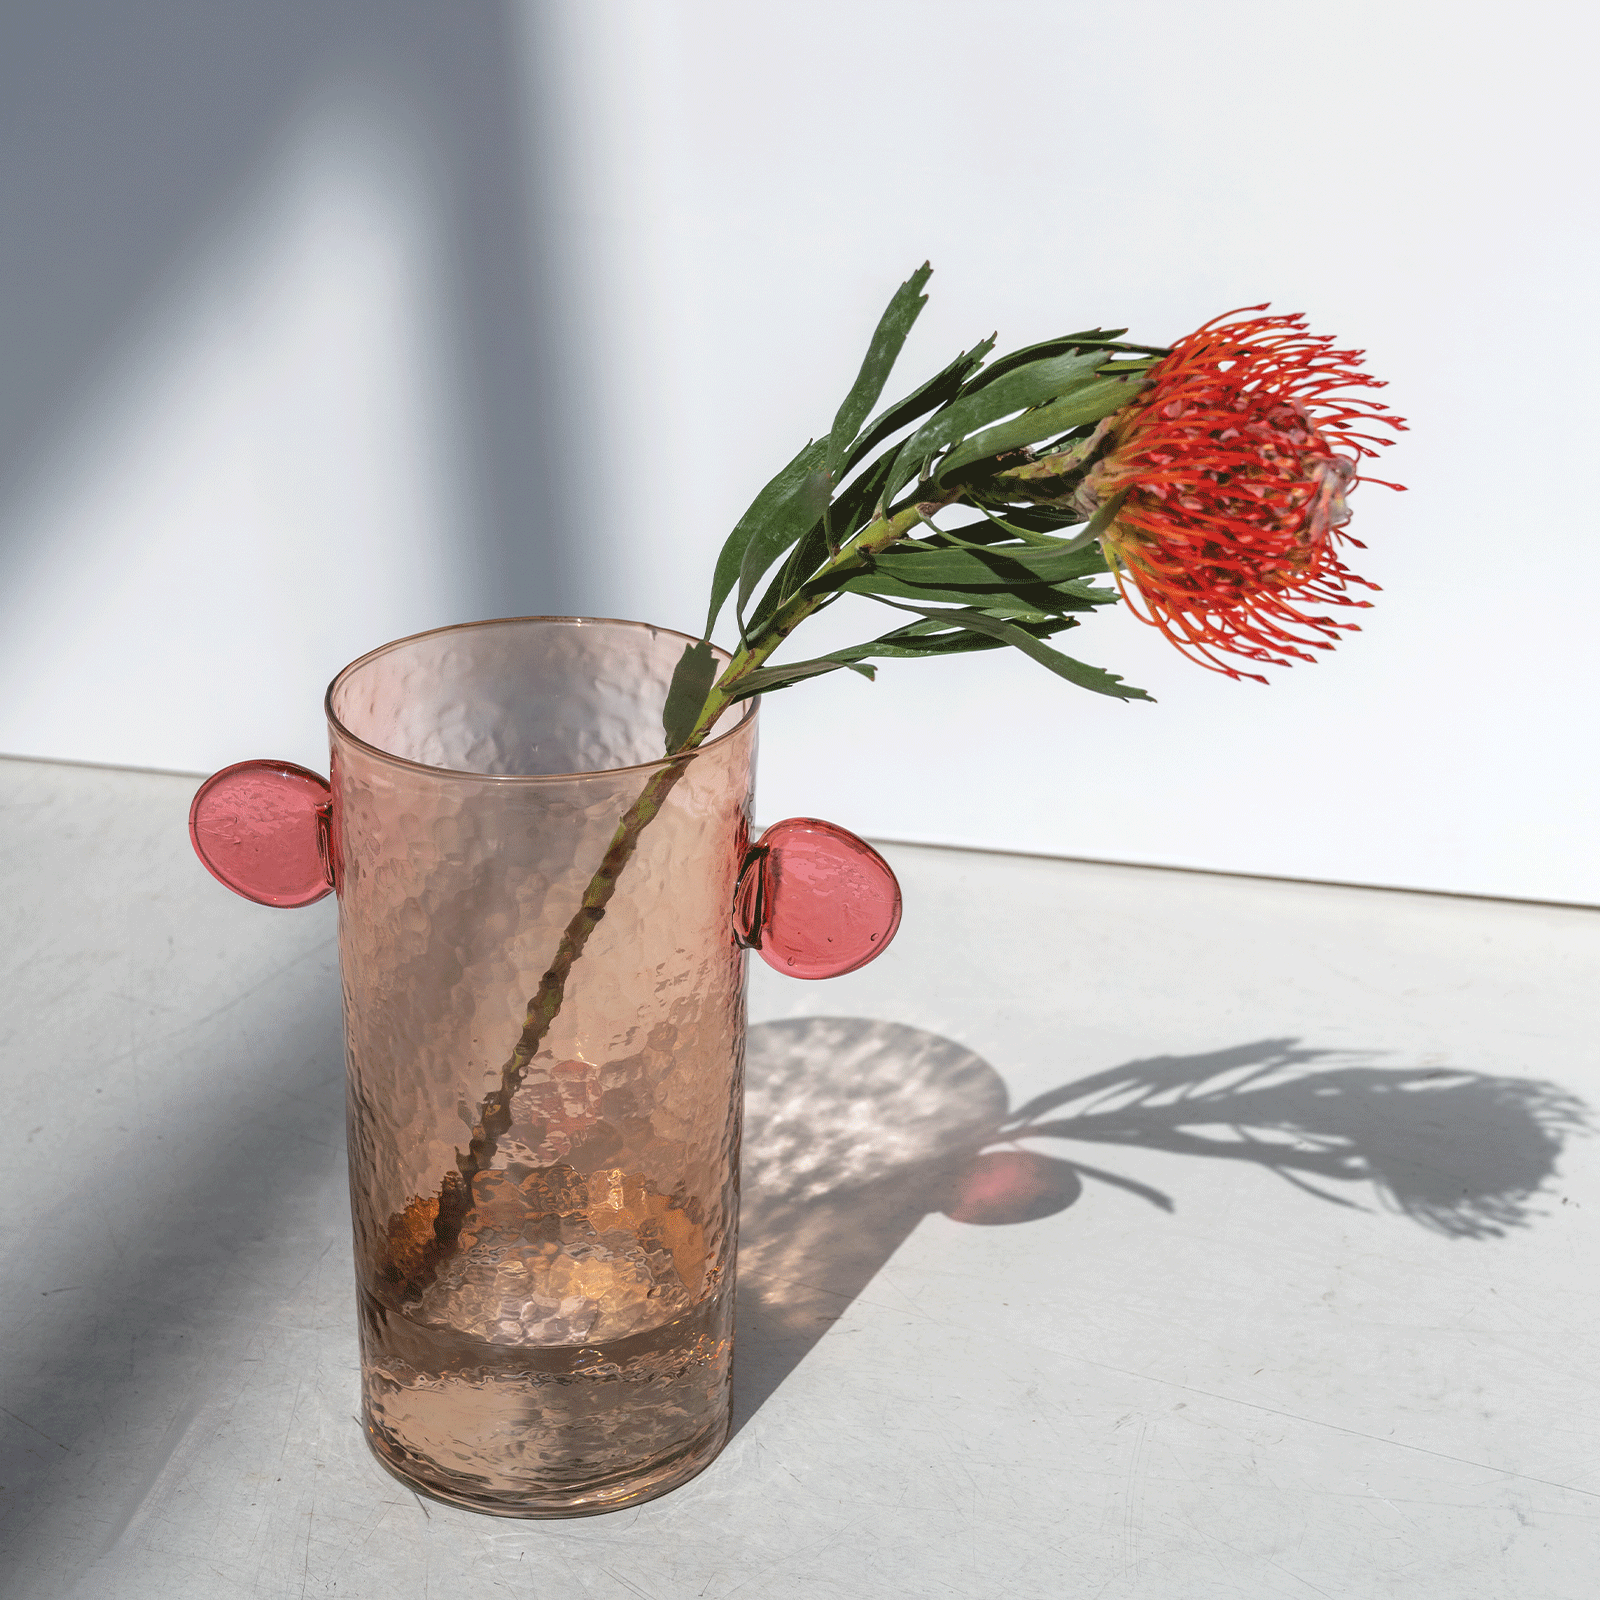 Glas vase m. ører - Lyserød